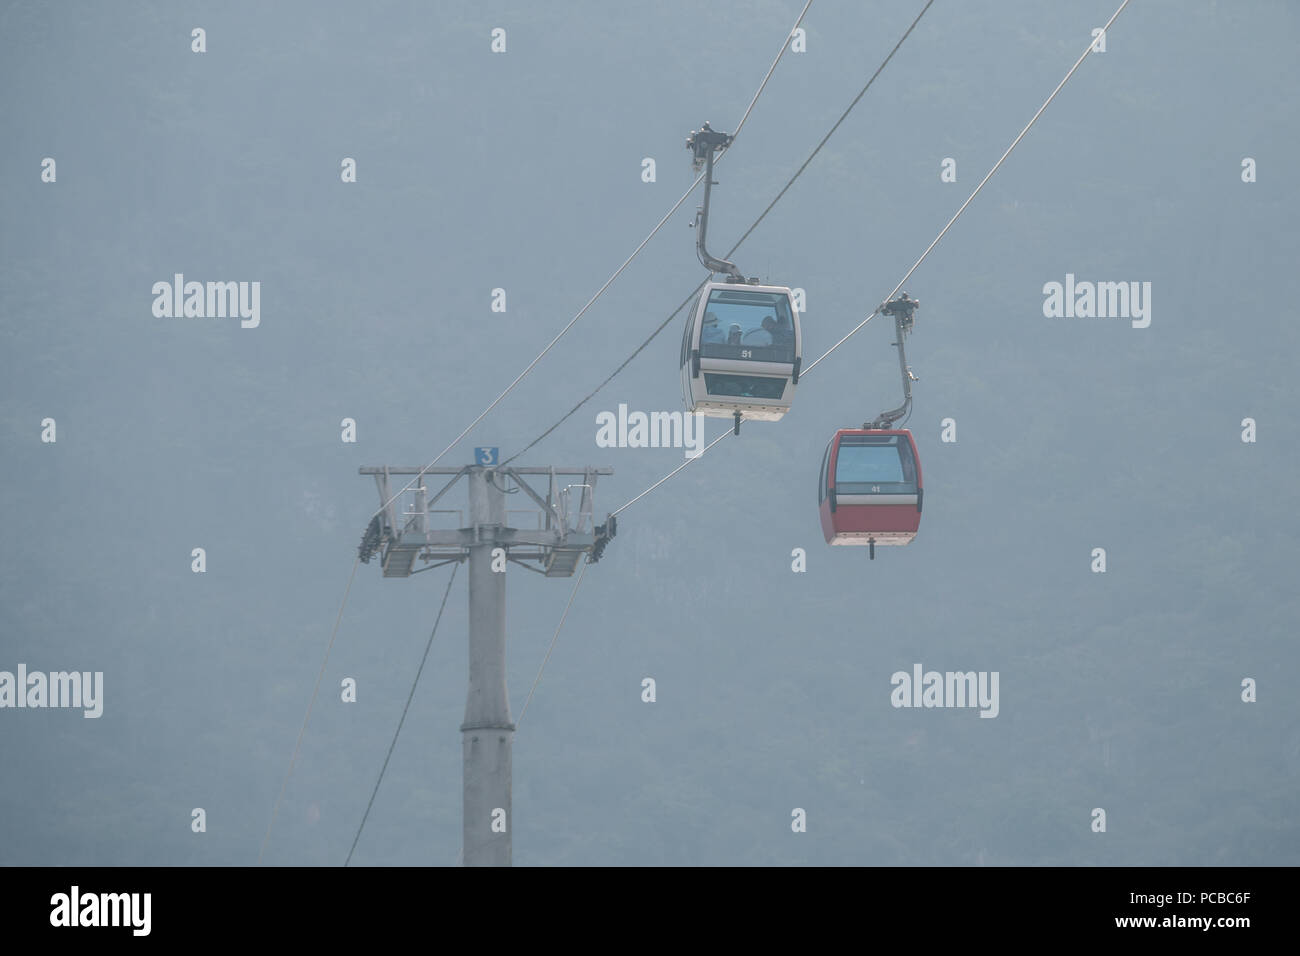 Aerial tramway on Dianchi Lake, Kunming, China Stock Photo